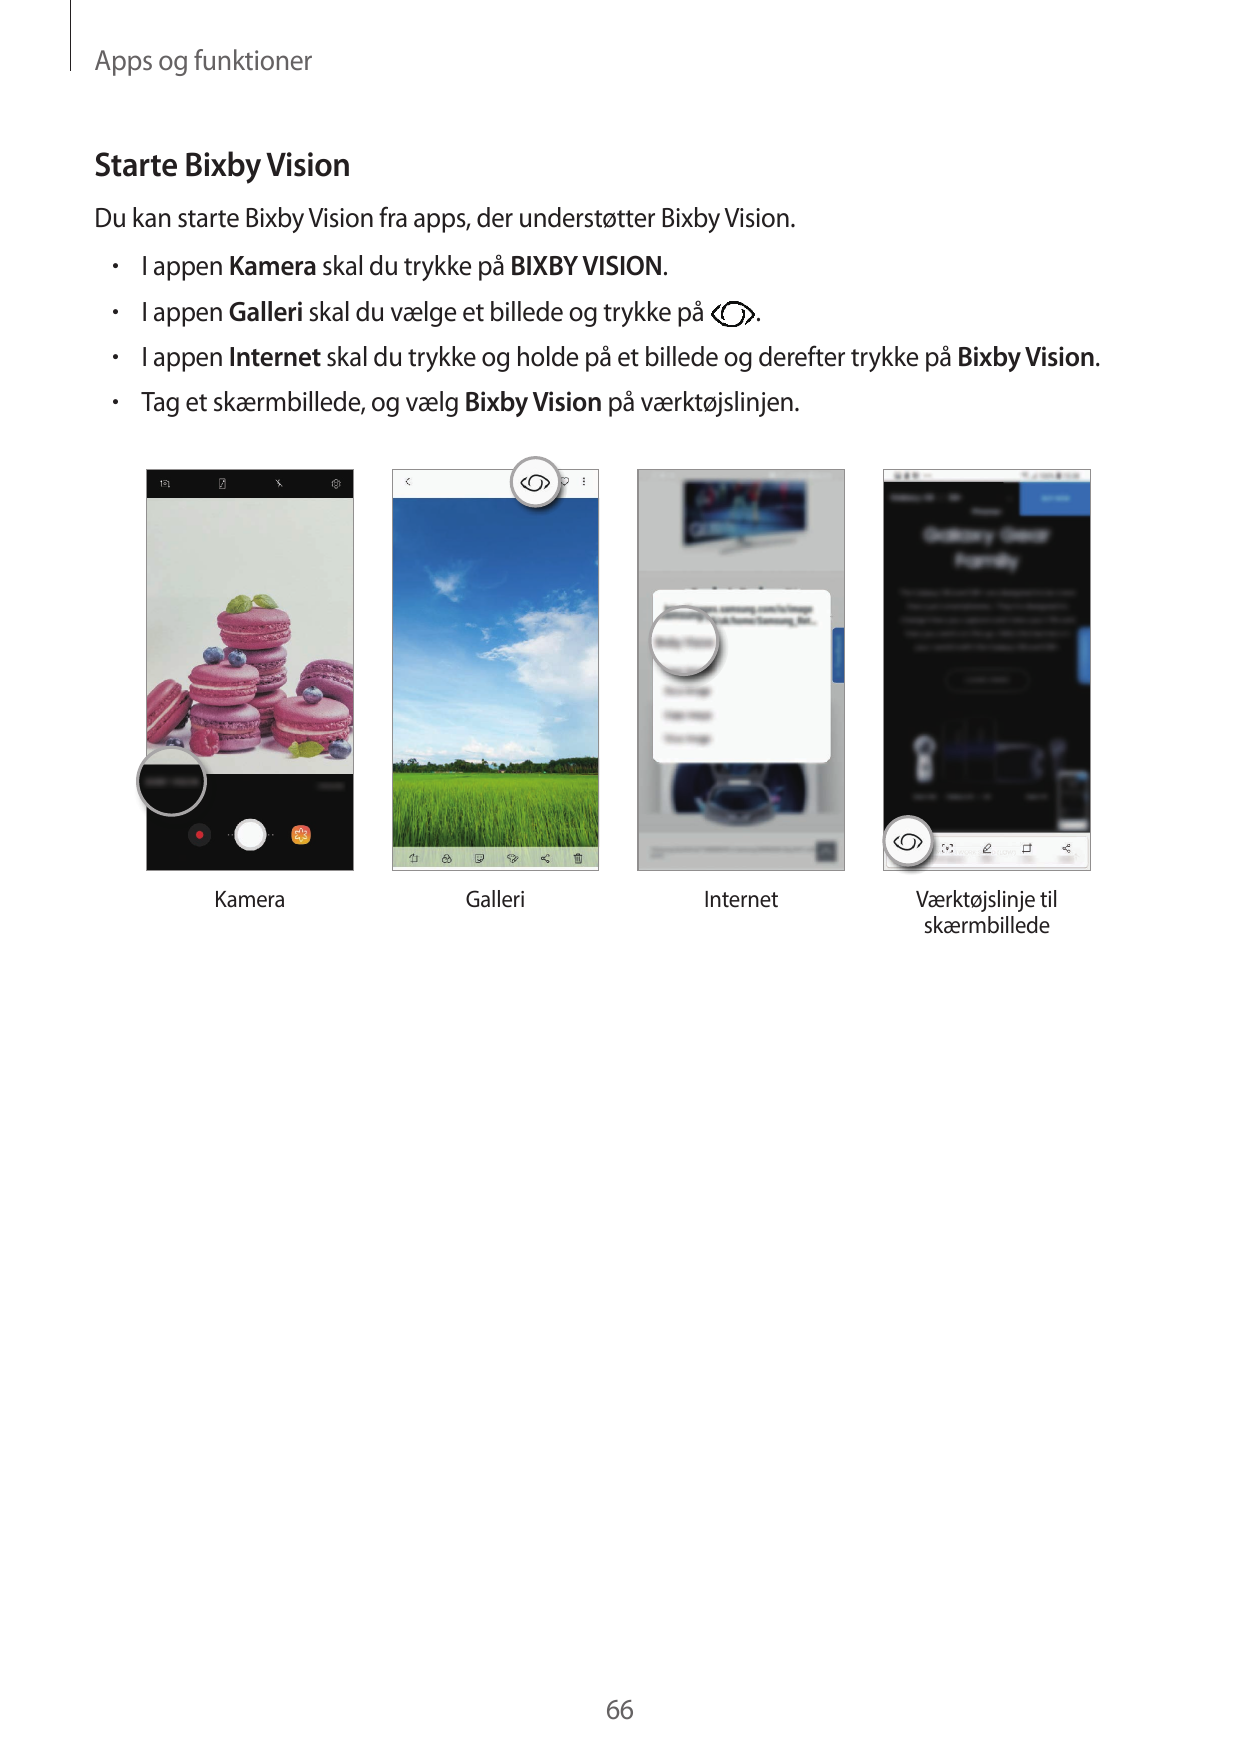 Apps og funktionerStarte Bixby VisionDu kan starte Bixby Vision fra apps, der understøtter Bixby Vision.• I appen Kamera skal du